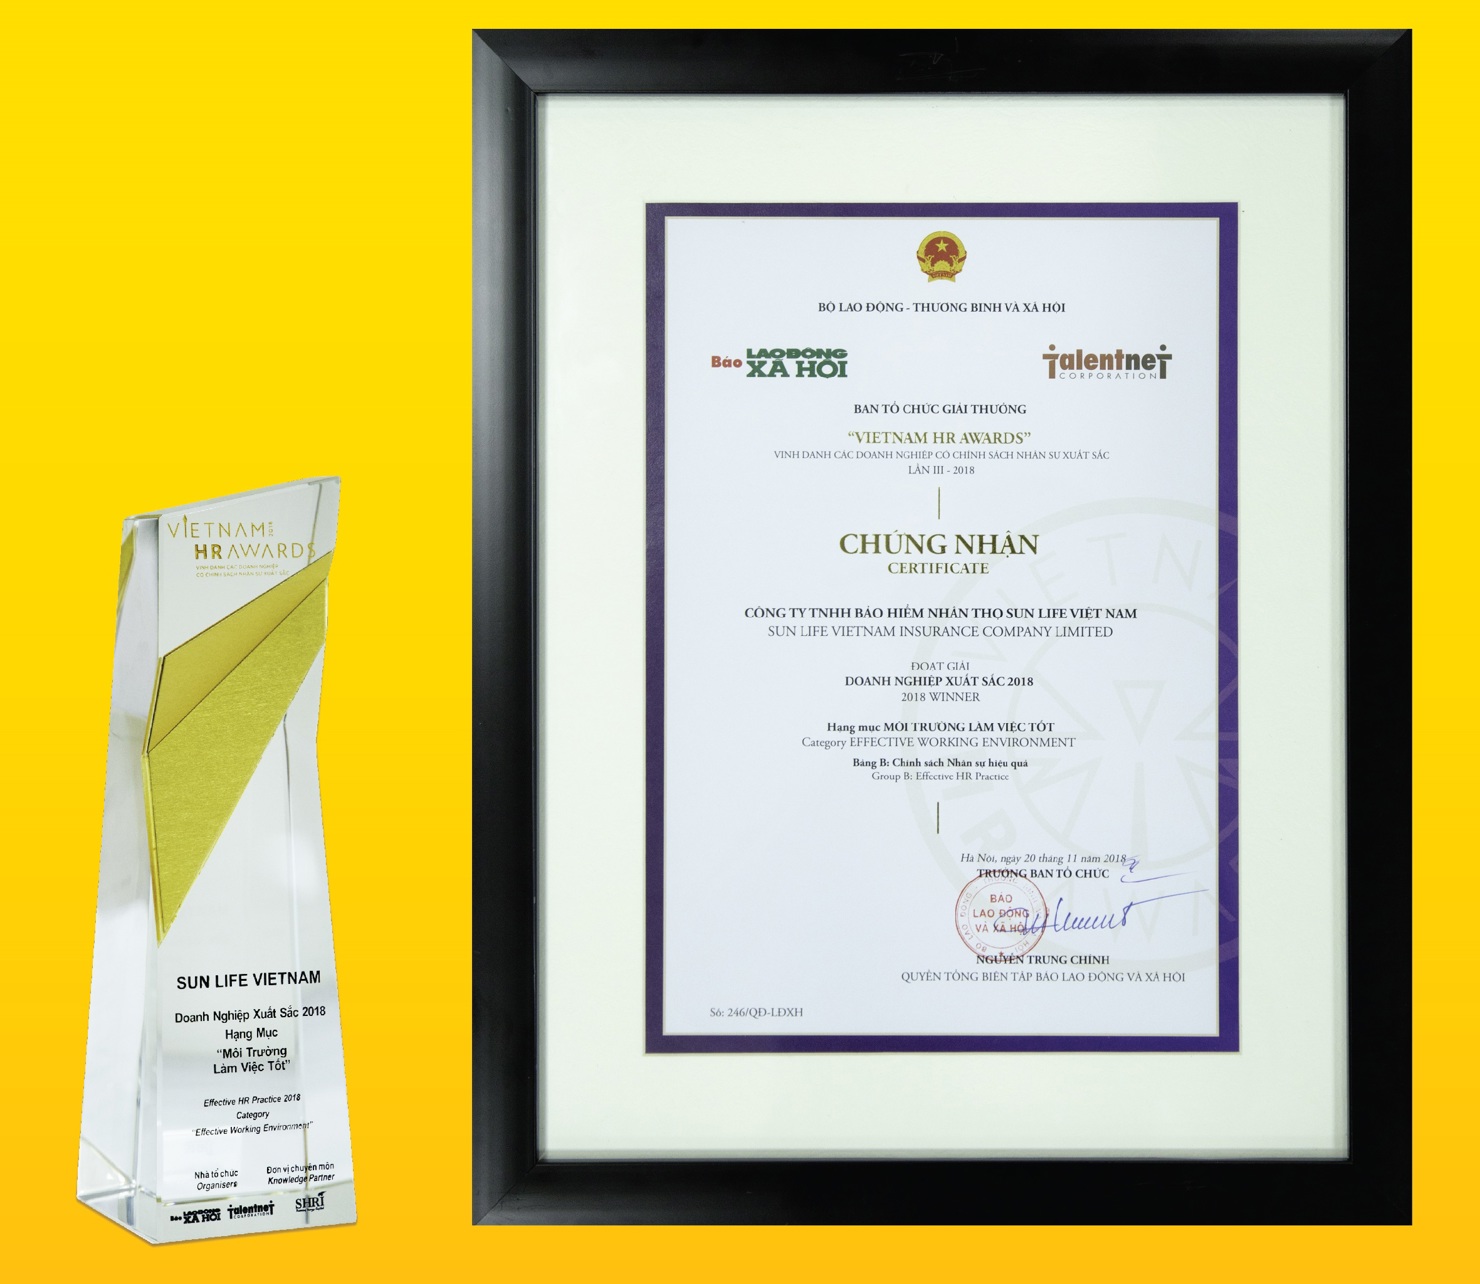 Sun Life Việt Nam vinh dự nhận giải thưởng "Công ty có môi trường làm việc tốt"